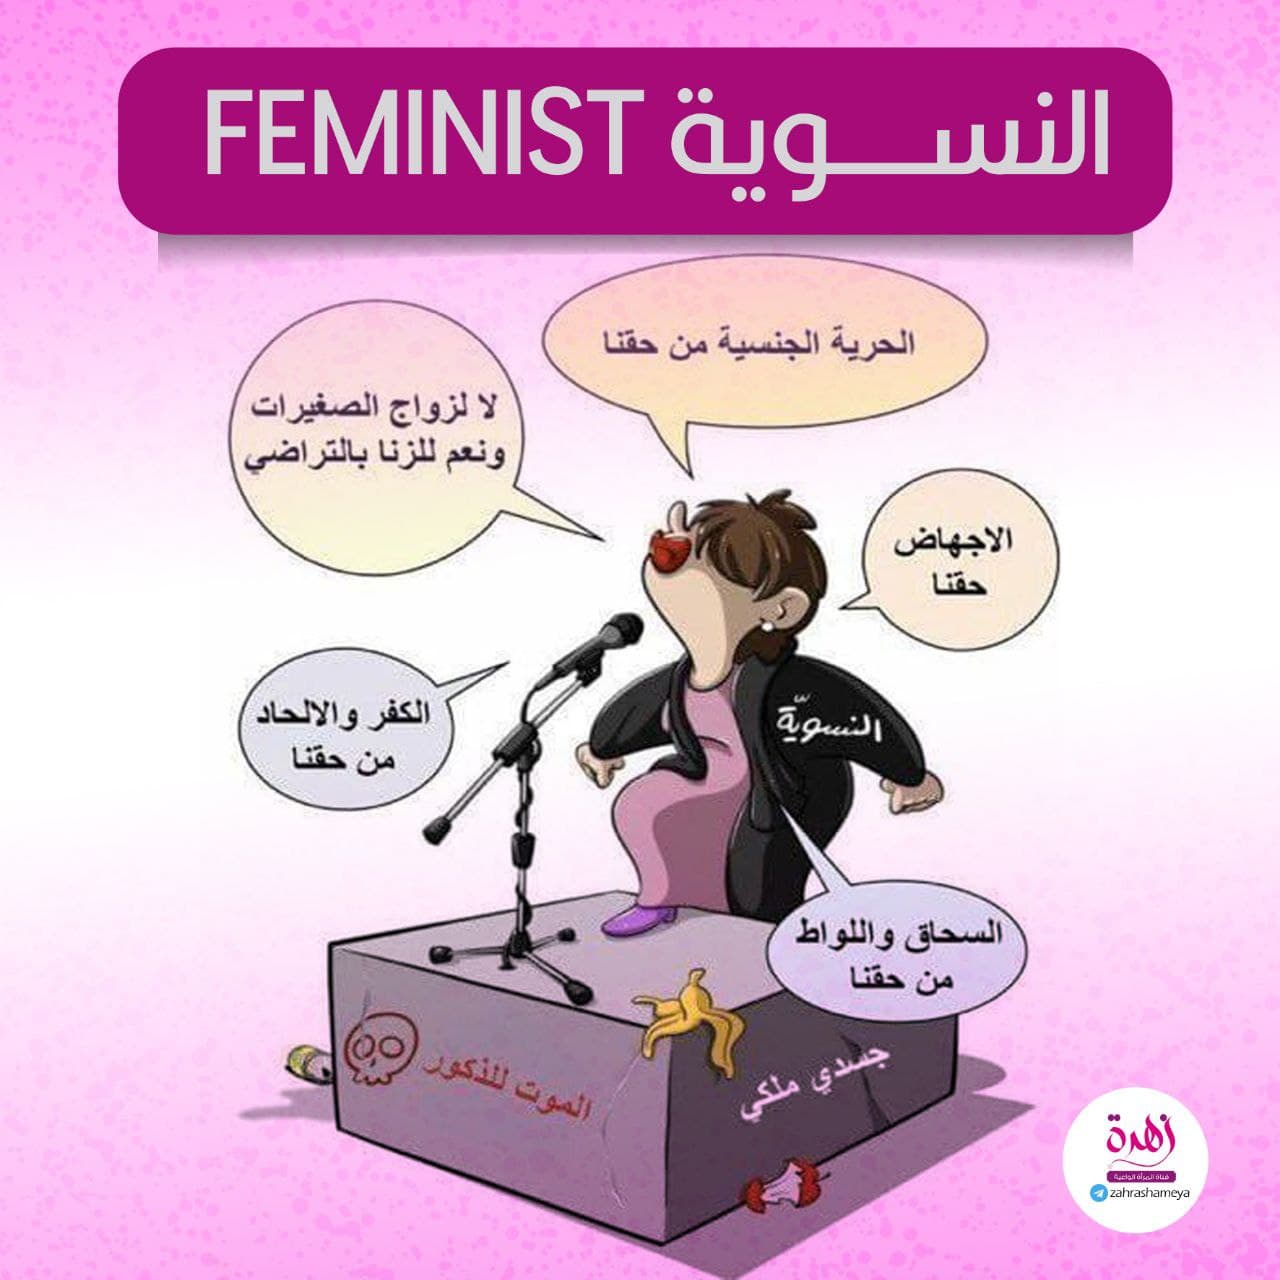 النسوية - feminist